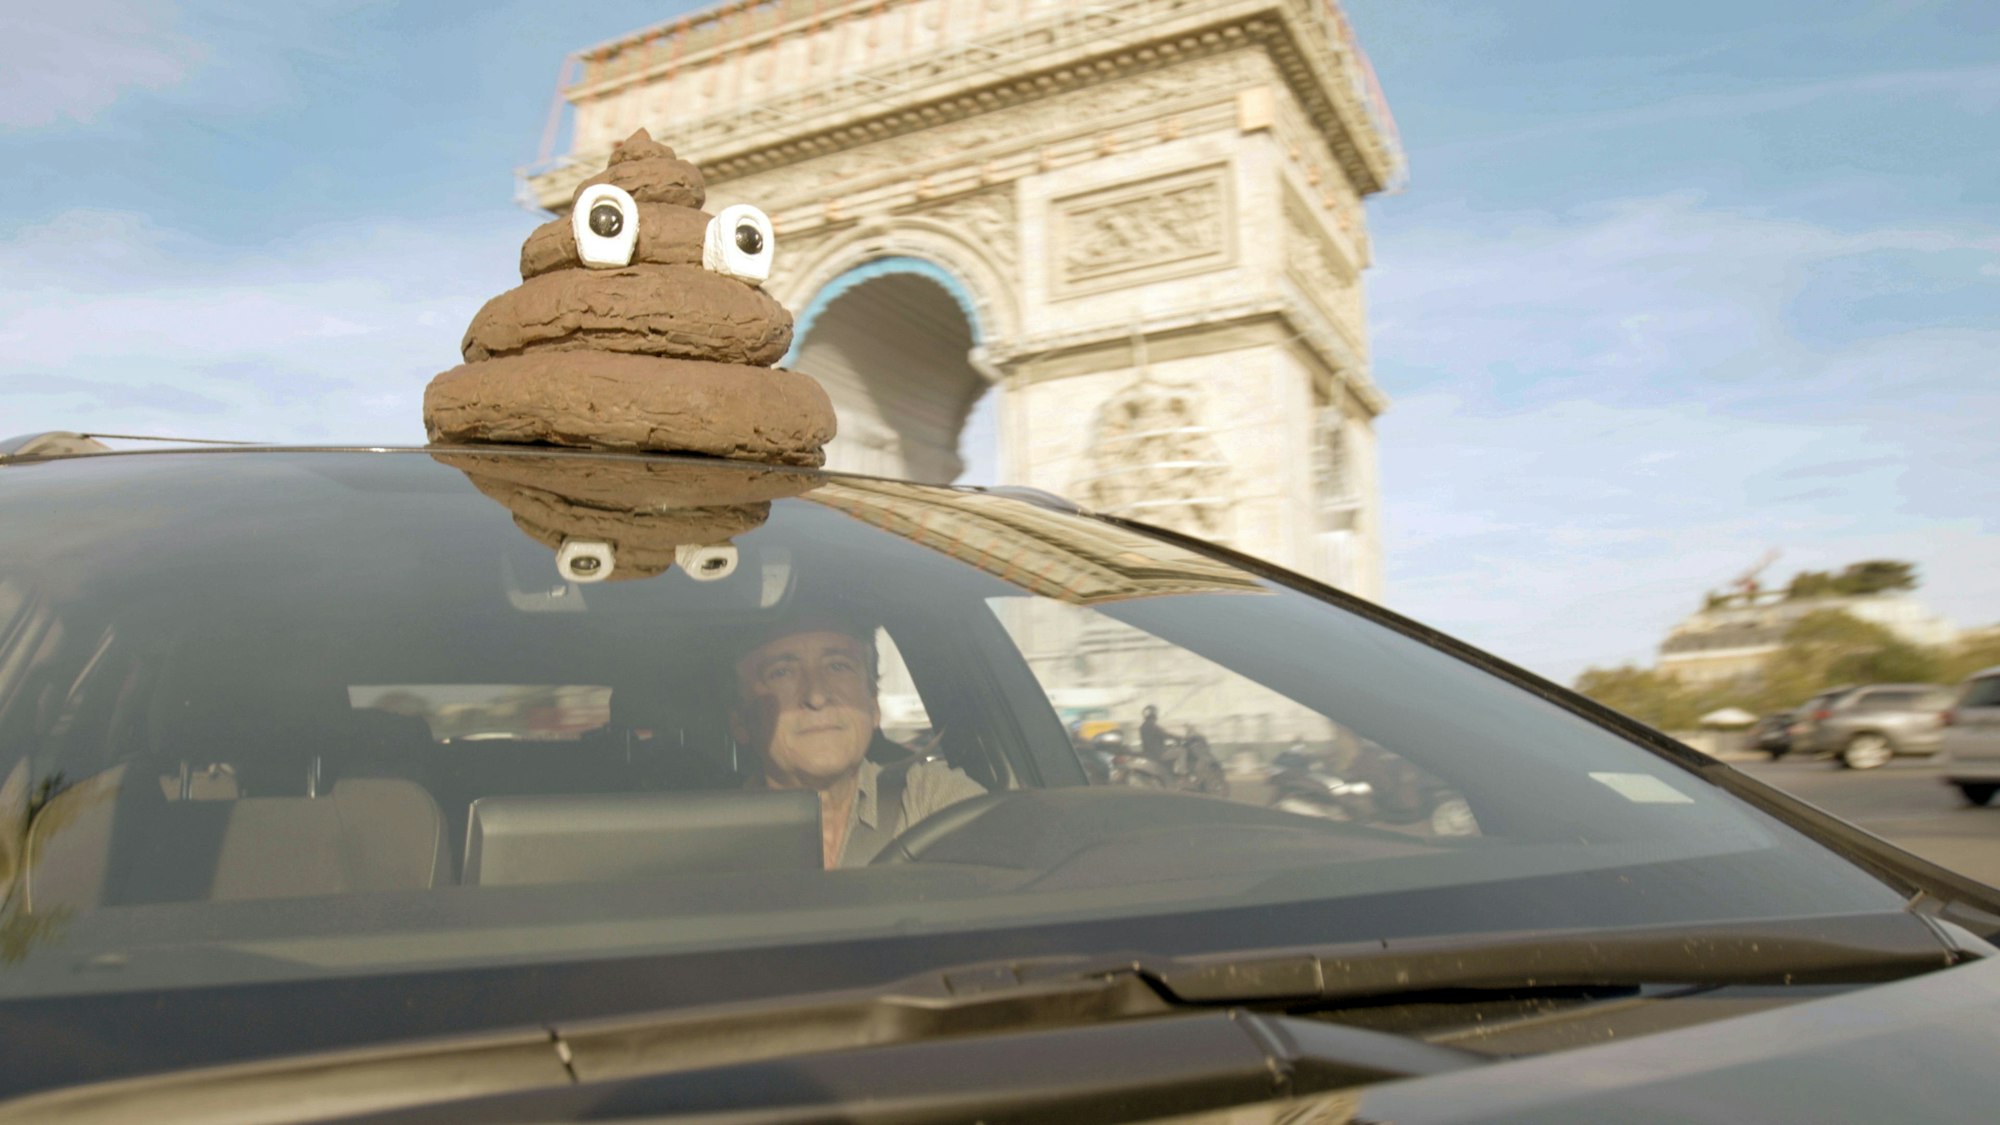 Auf dem Bild sieht man den Regisseur in einem Auto vor dem Arc de Triomphe in Paris, auf dem Dach ist eine Figur aus Schaumstoff, die einen Haufen darstellt.